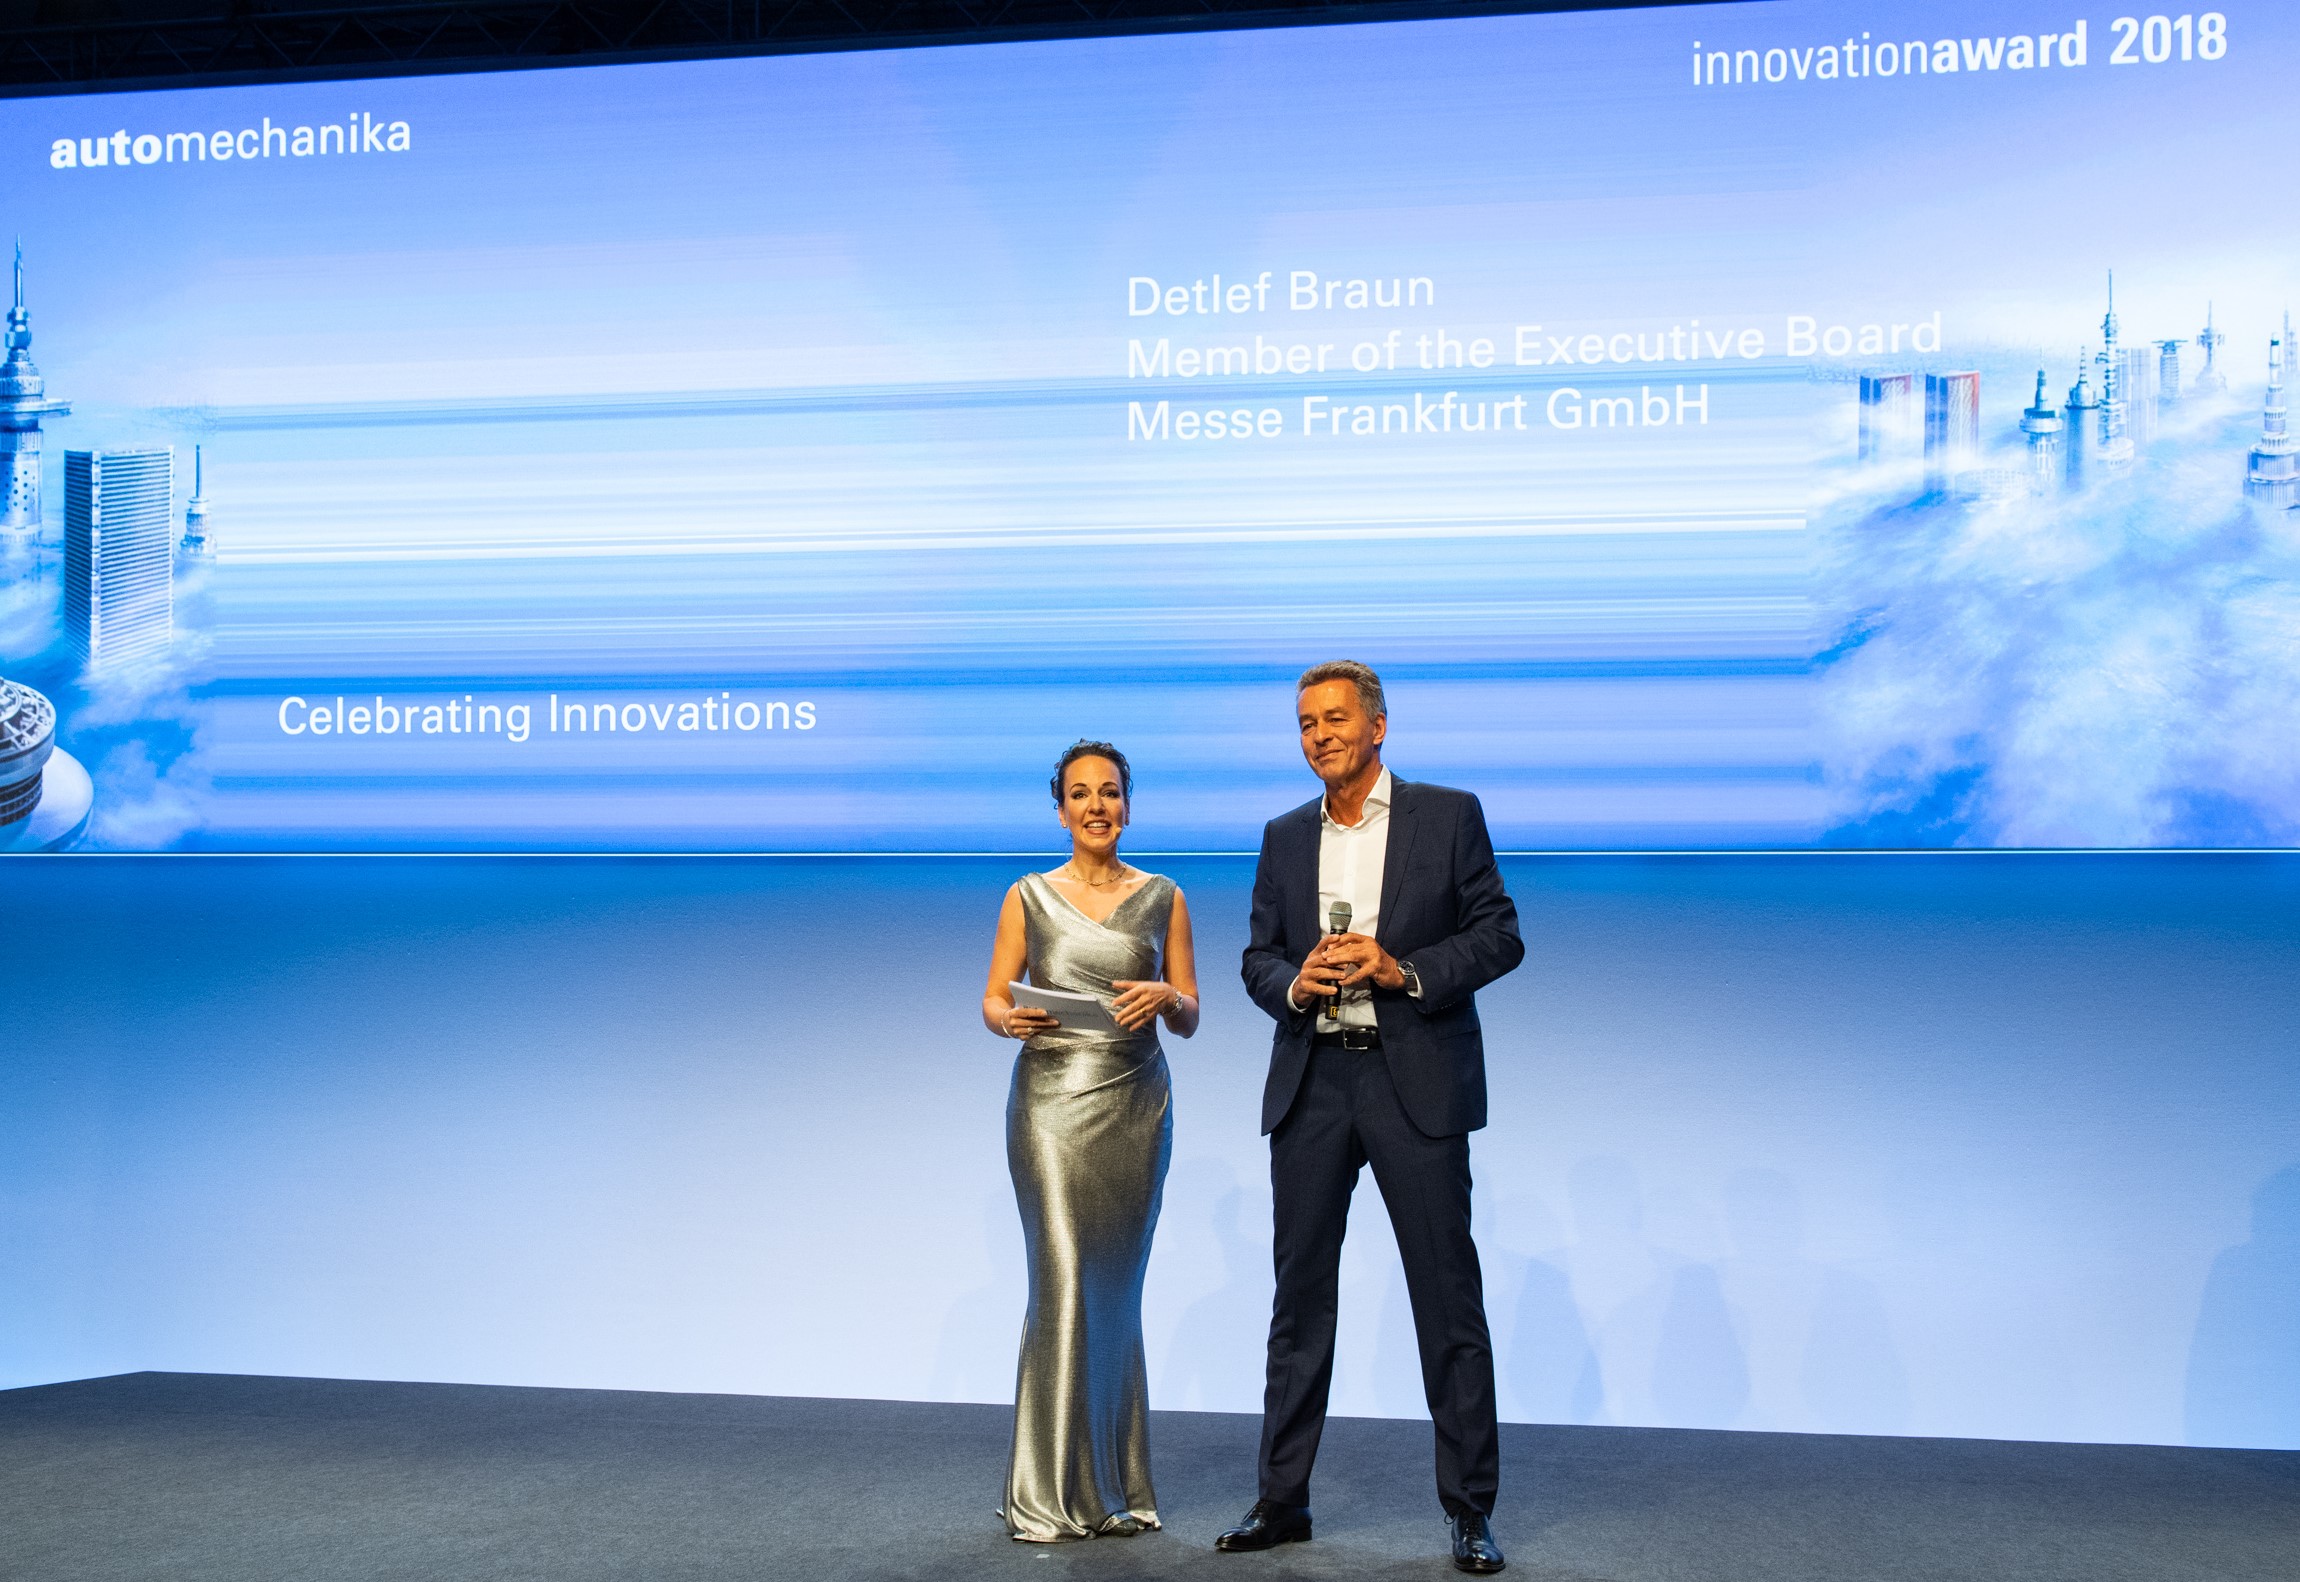 Vorhang auf für Innovationen: Preisverleihung der Automechanika Innovation Awards 2018